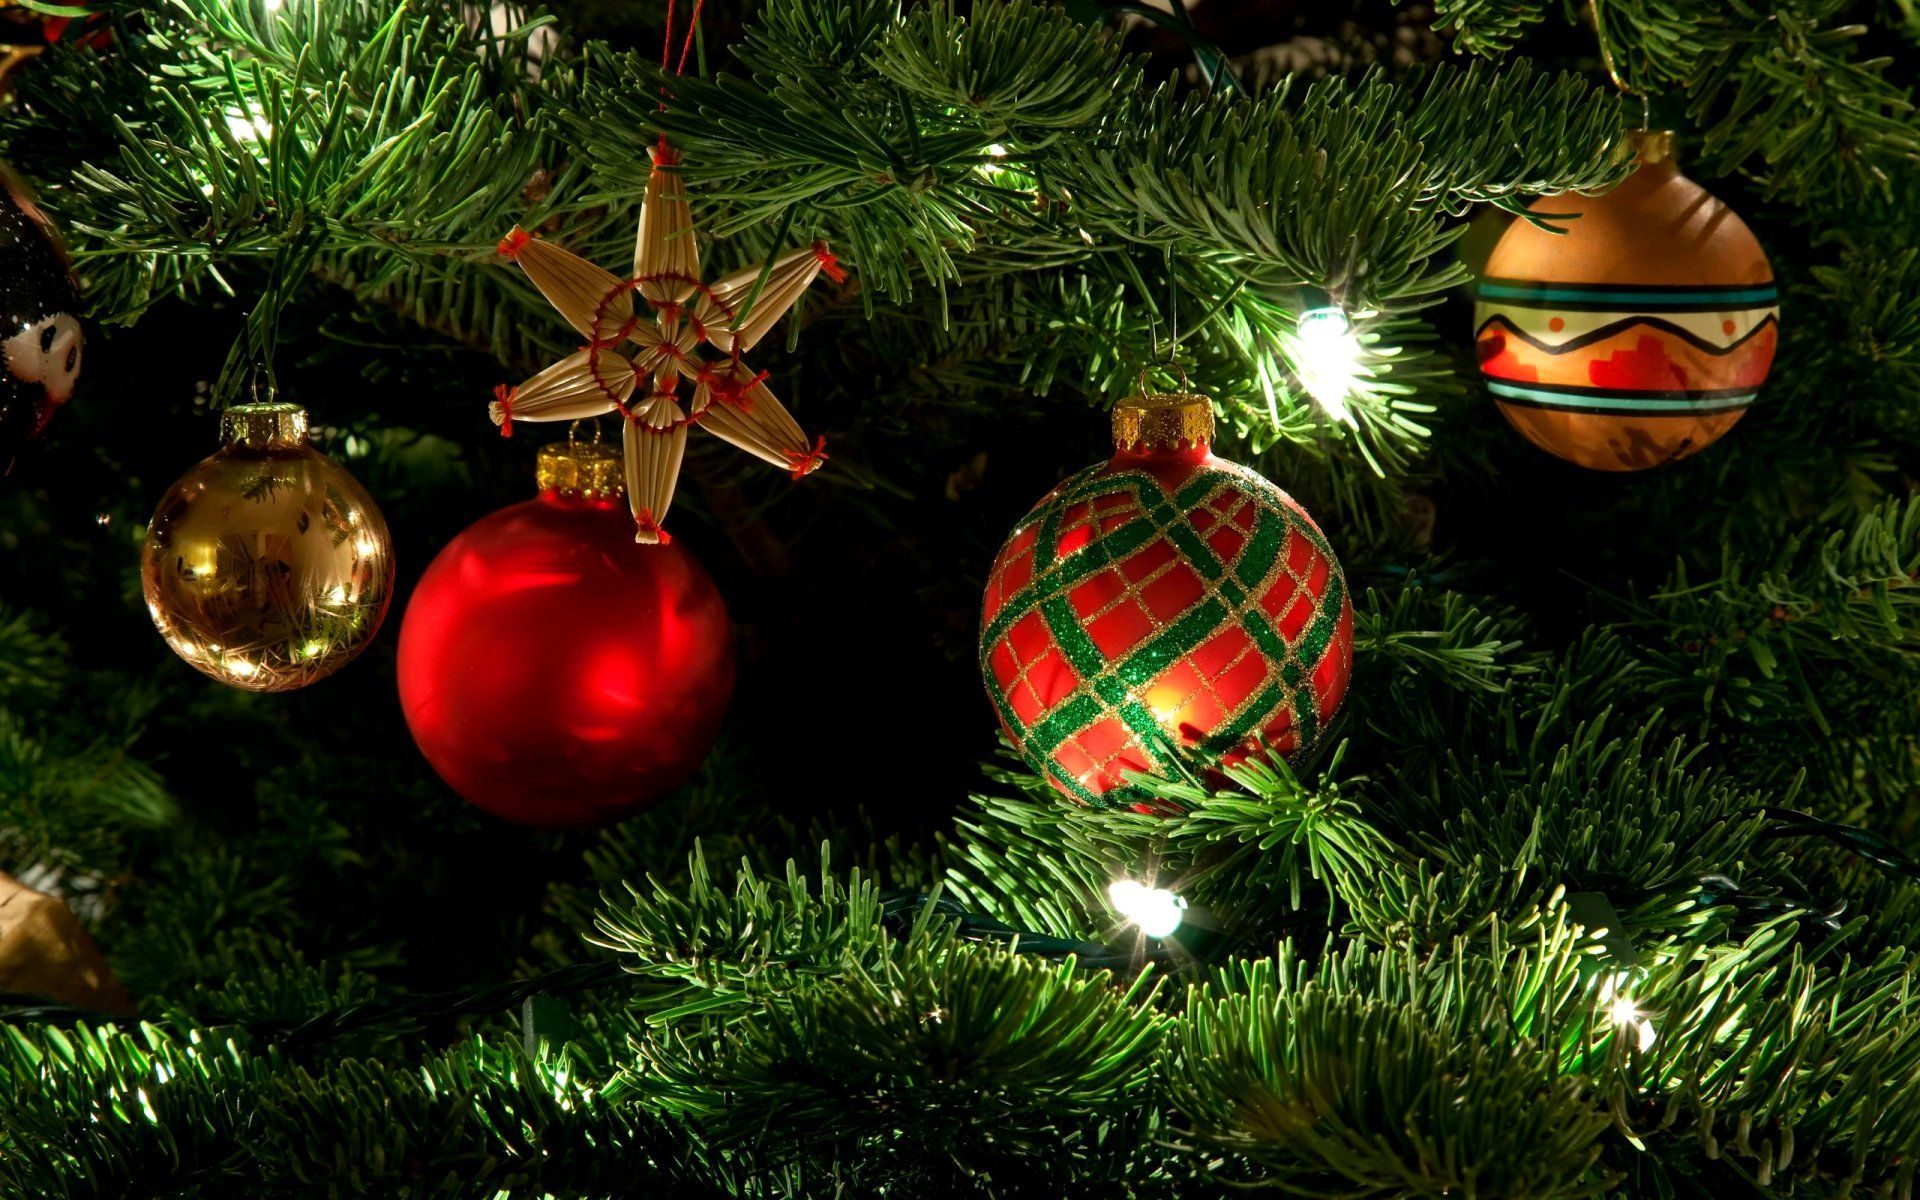 Holiday Christmas Christmas Ornaments Wallpaper. Christmas tree decorations uk, Christmas tree decorations, Christmas decorations tree